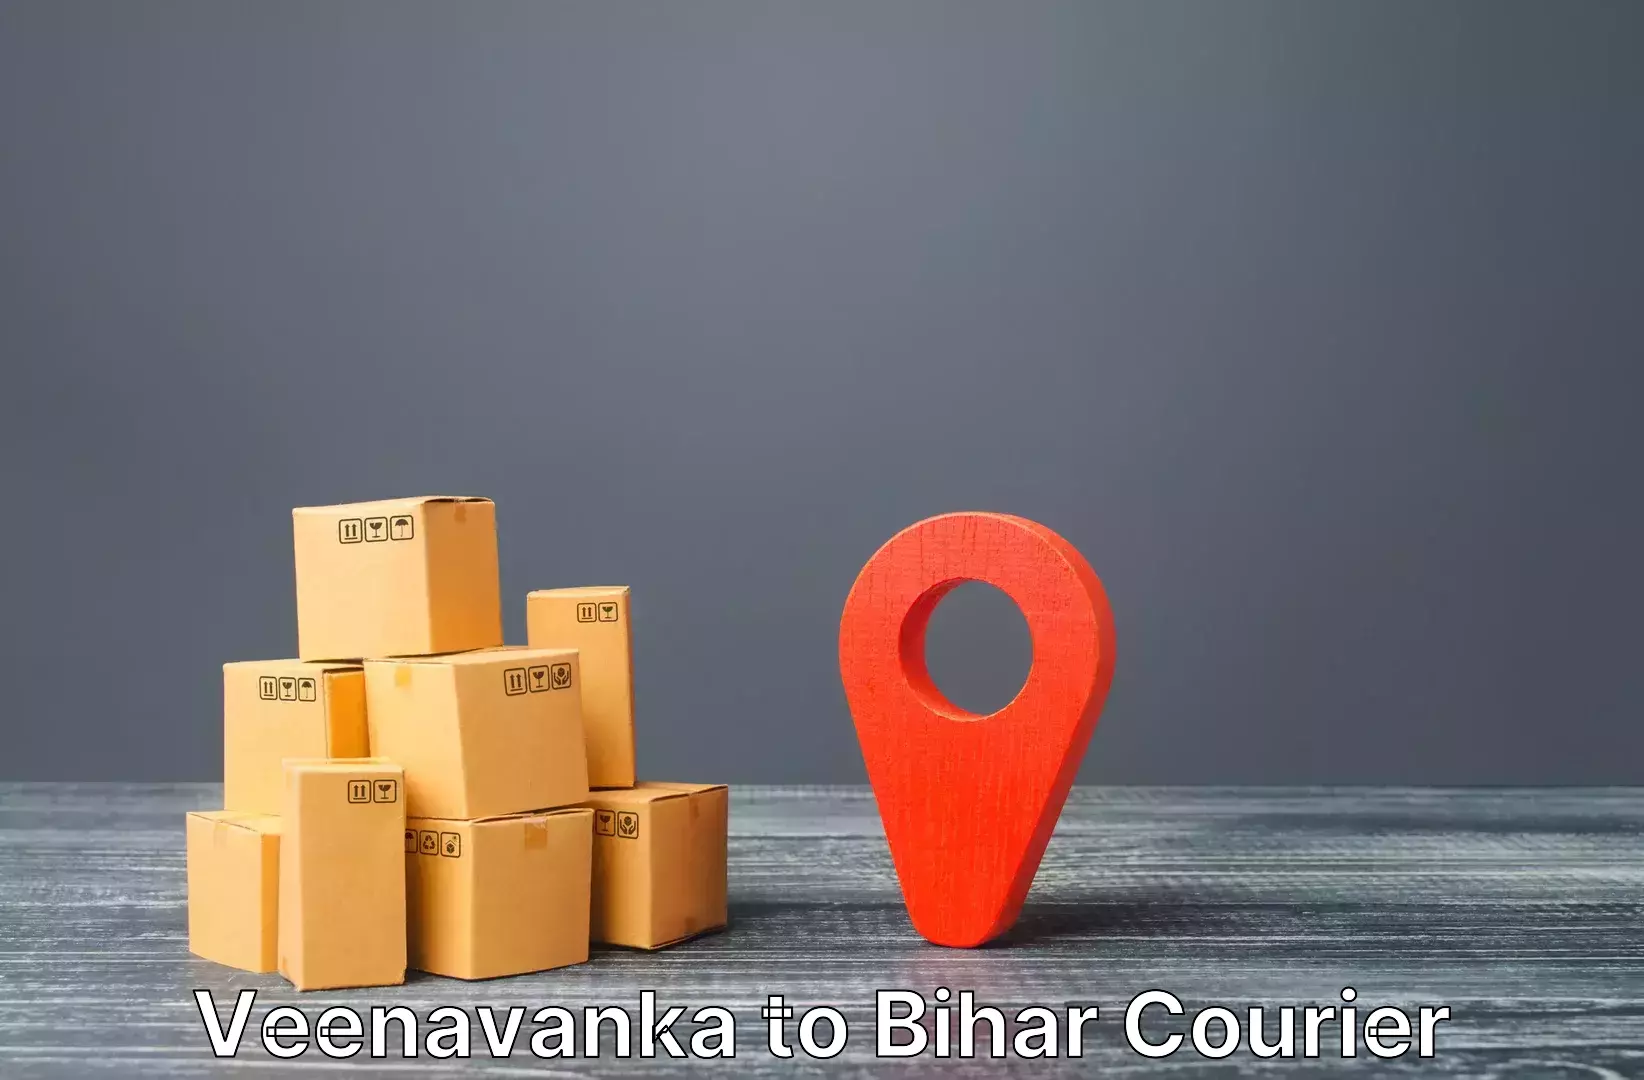 Baggage shipping logistics in Veenavanka to Gaya